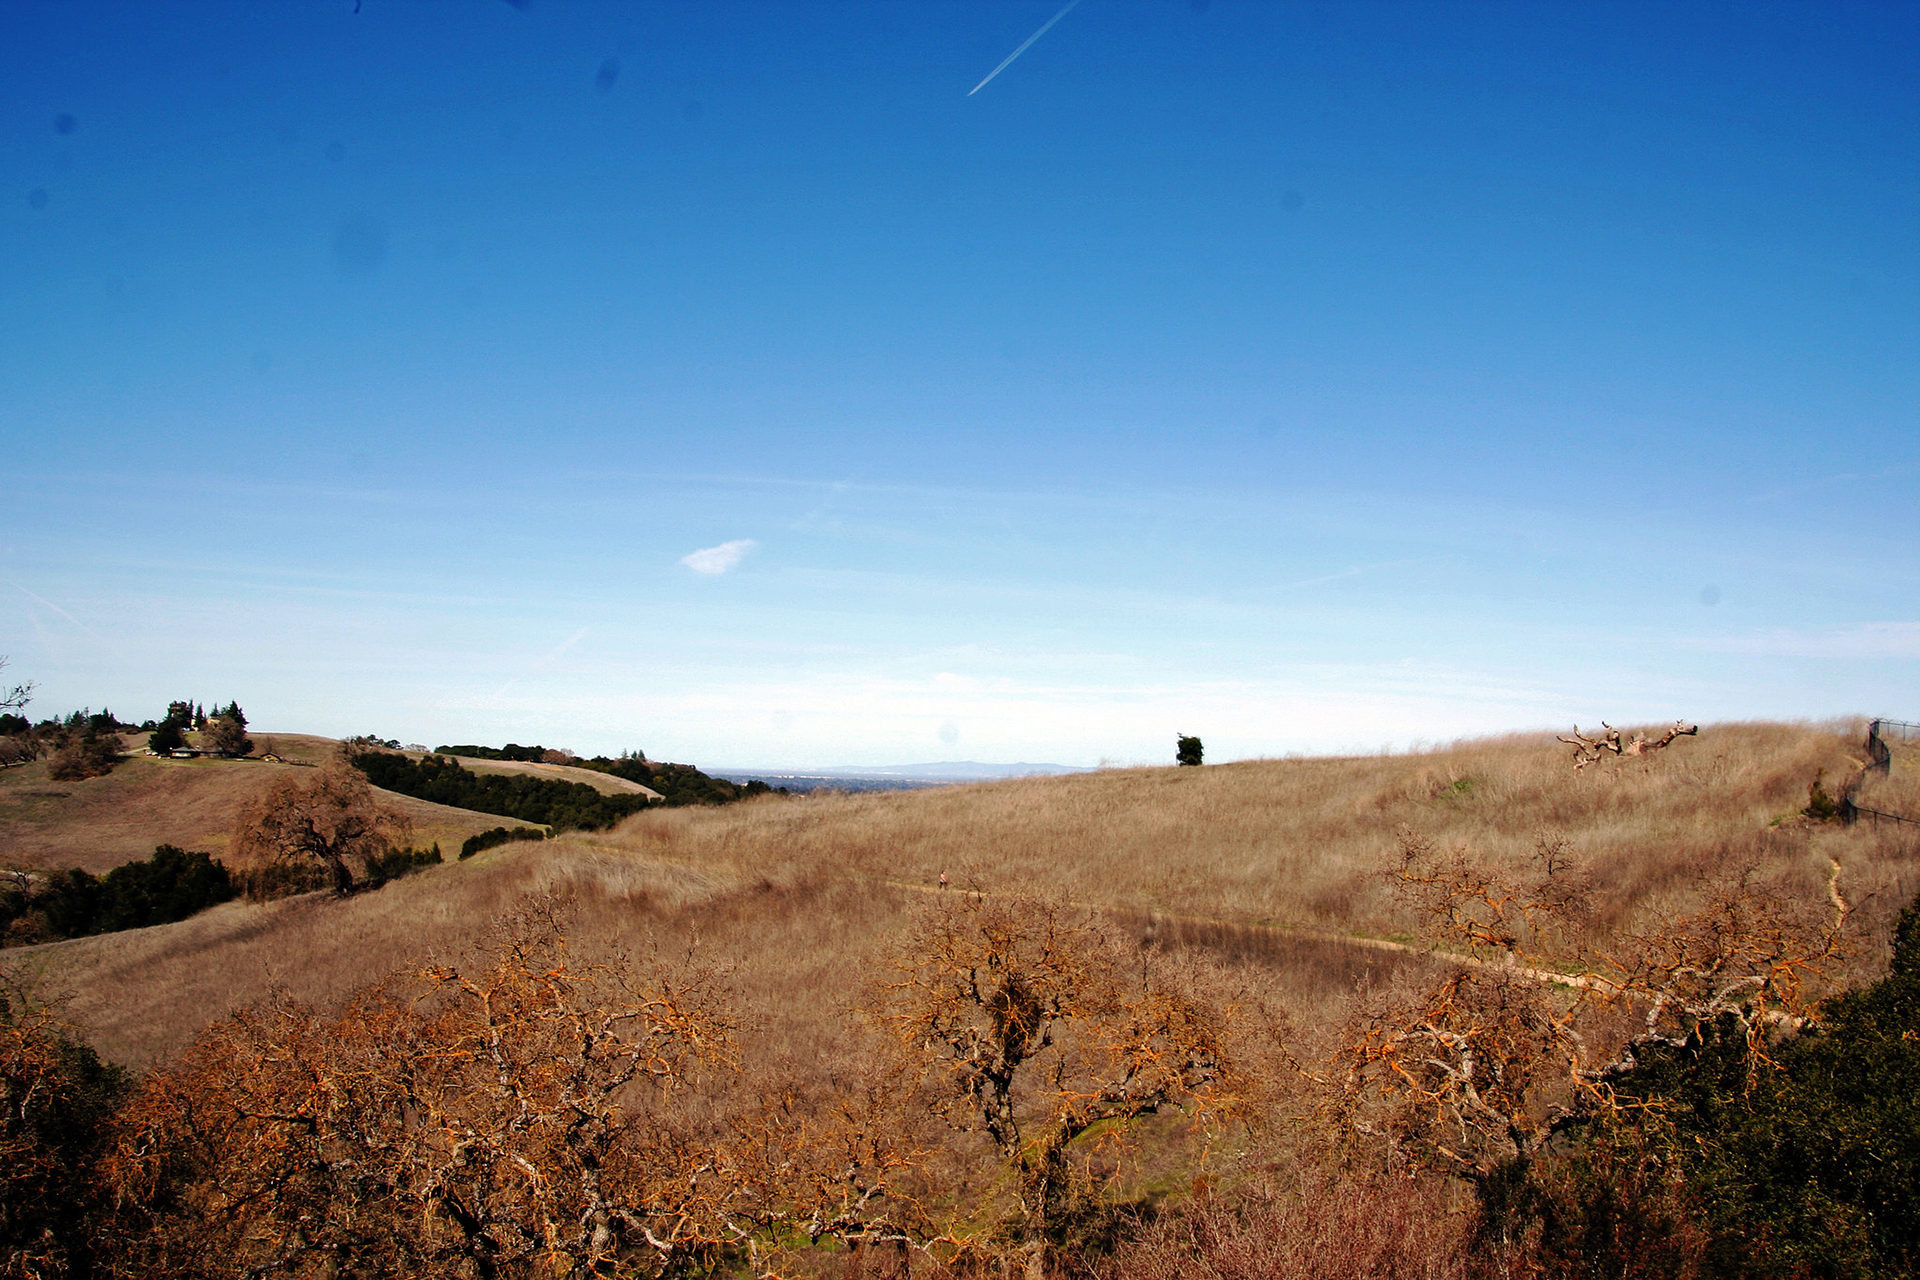 Brown, grassy hillsides under blue skies.